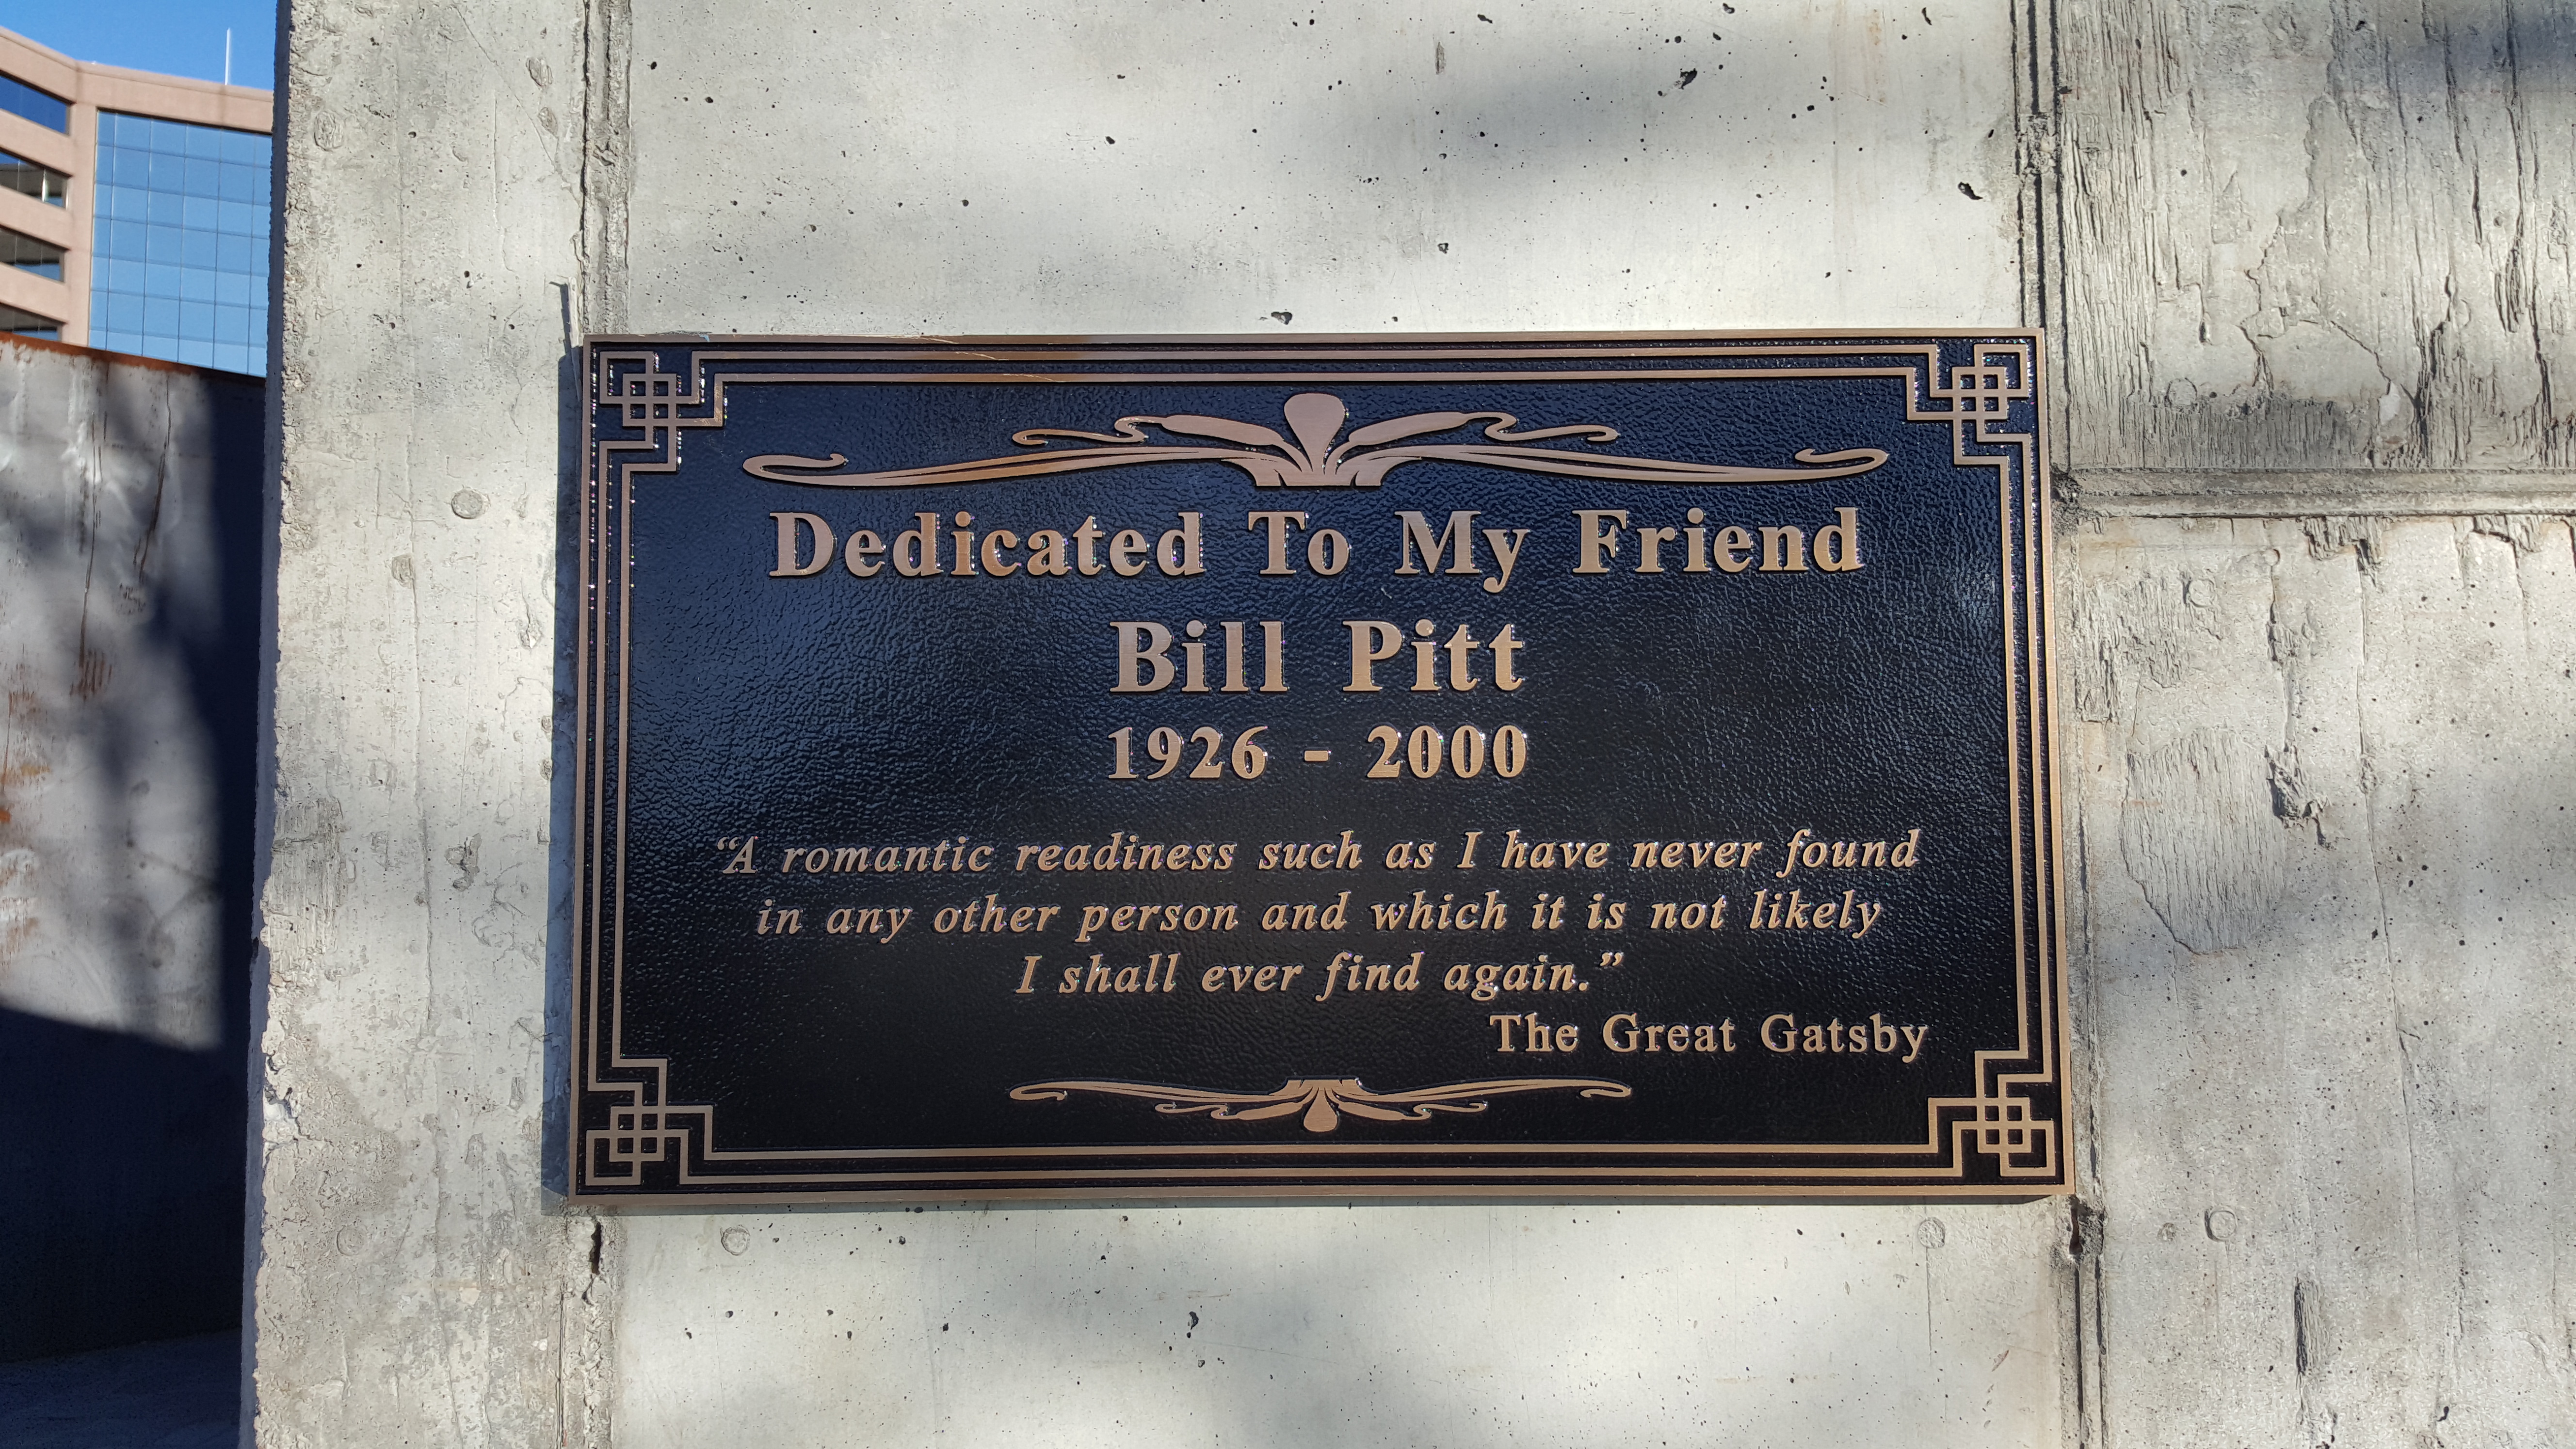 Dedication to Bill Pitt